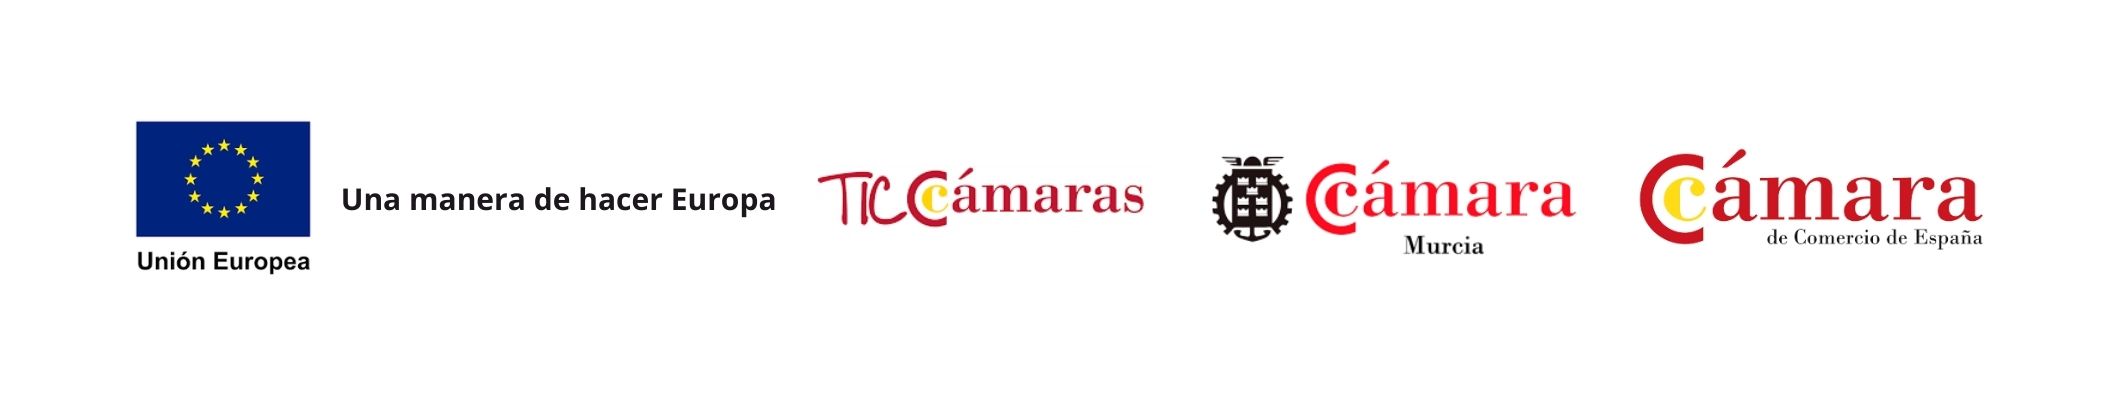 TICCamaras-programa-logos